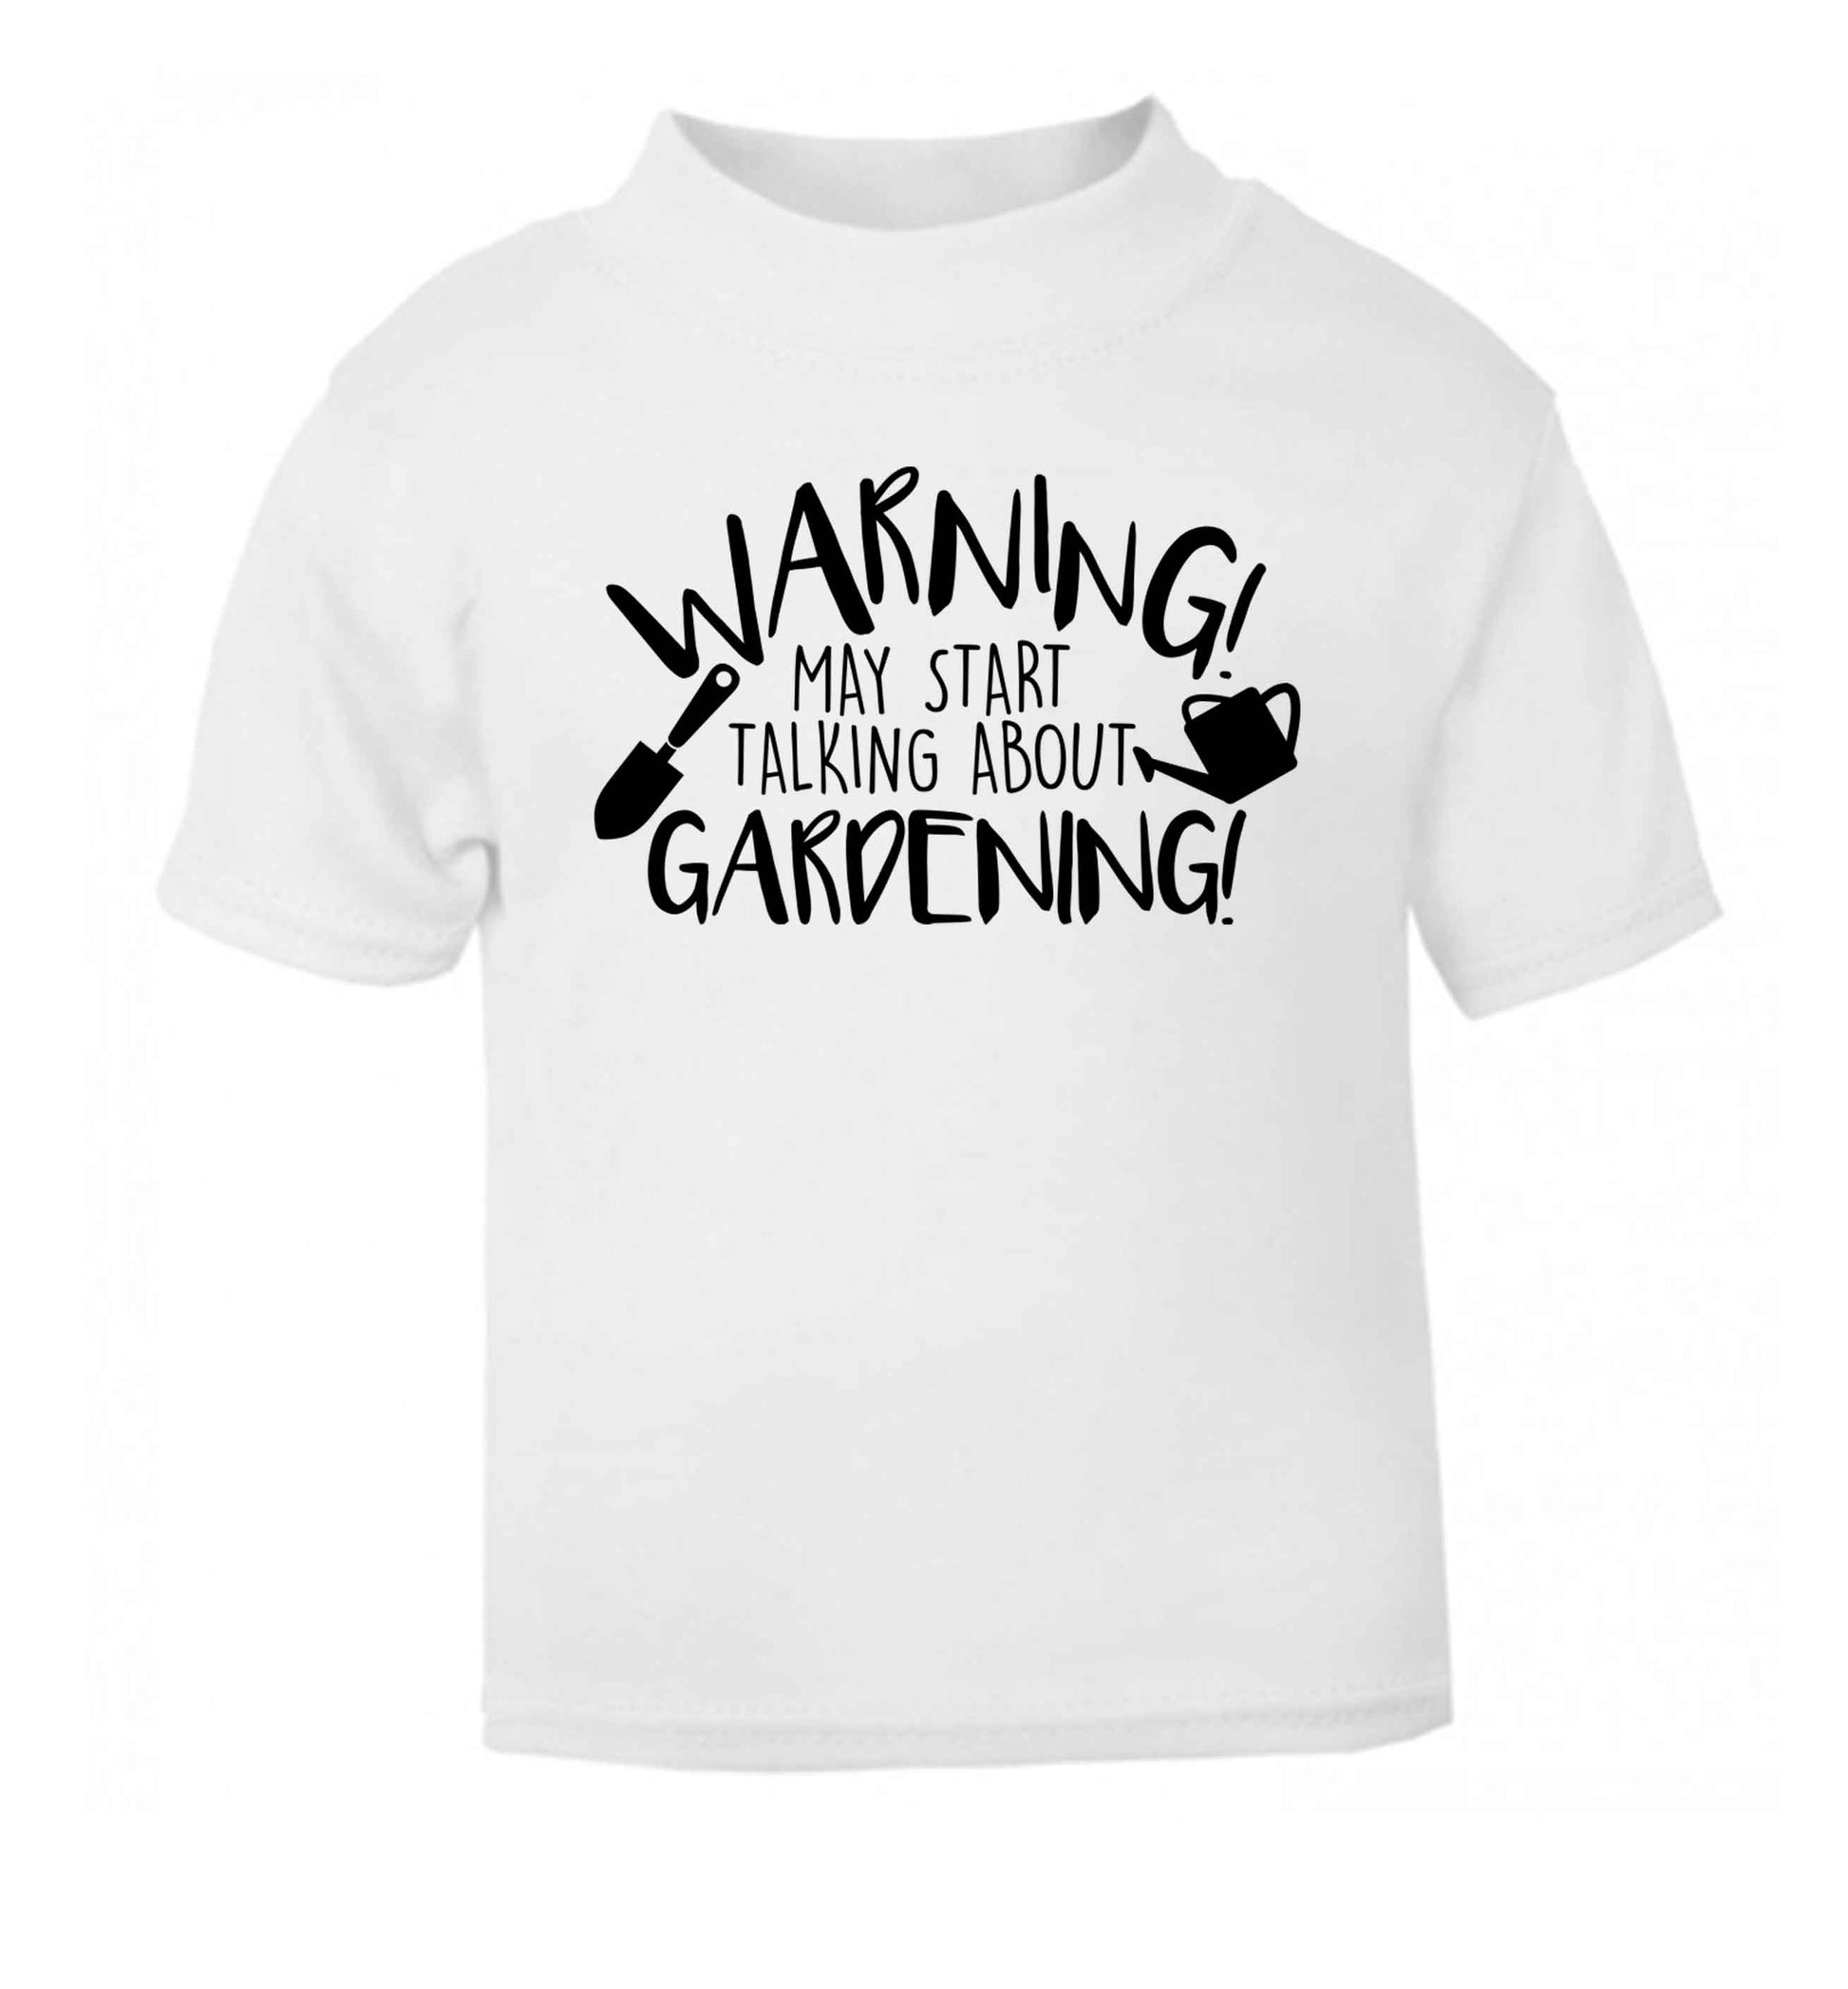 Warning may start talking about gardening white Baby Toddler Tshirt 2 Years